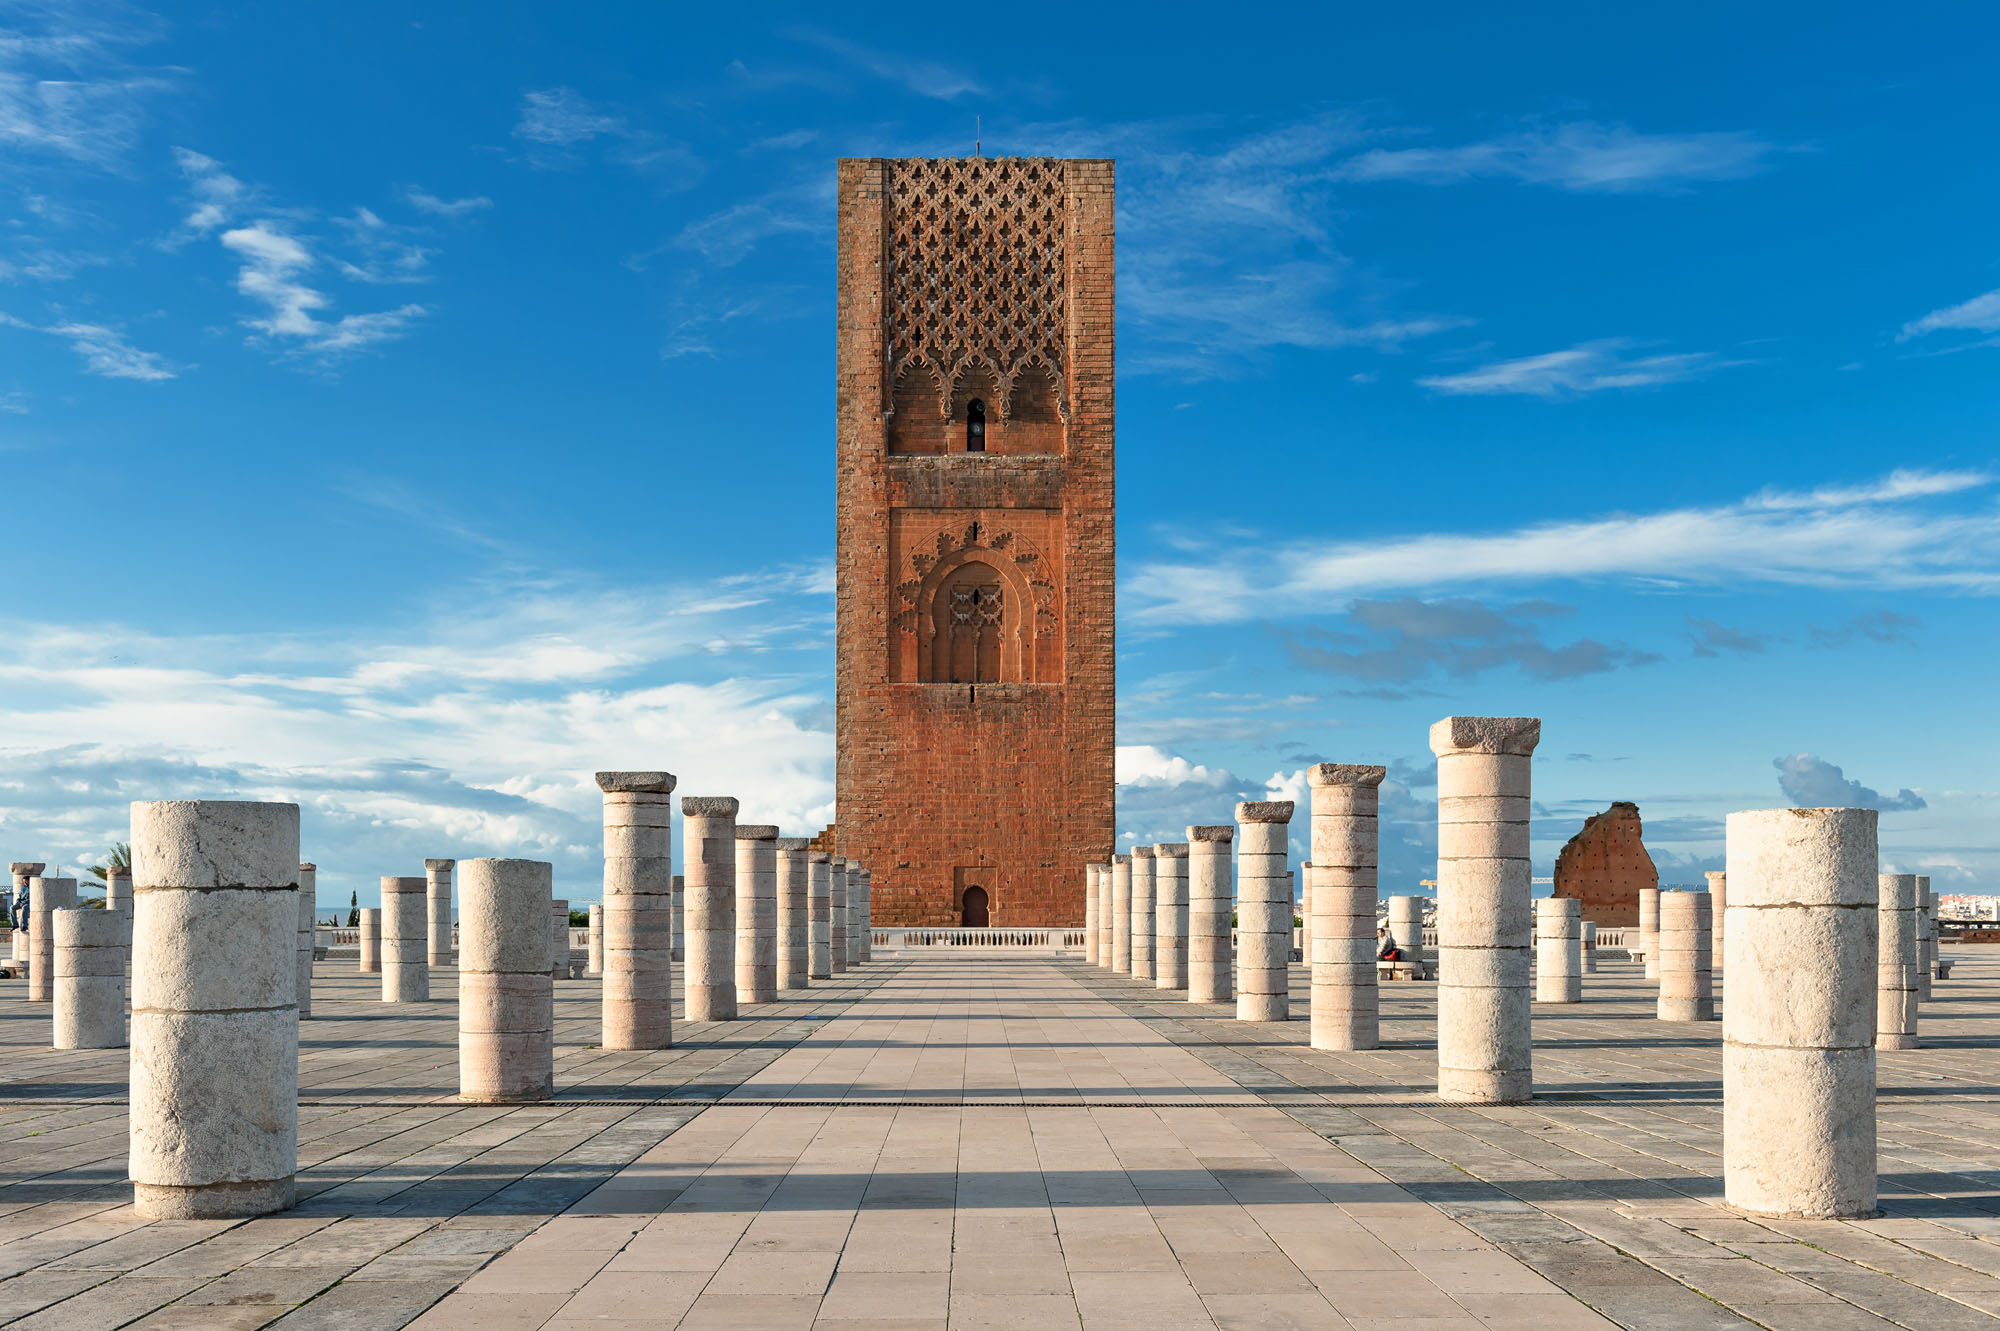 Circuit combiné désert et villes impériales du Maroc | 6 jours